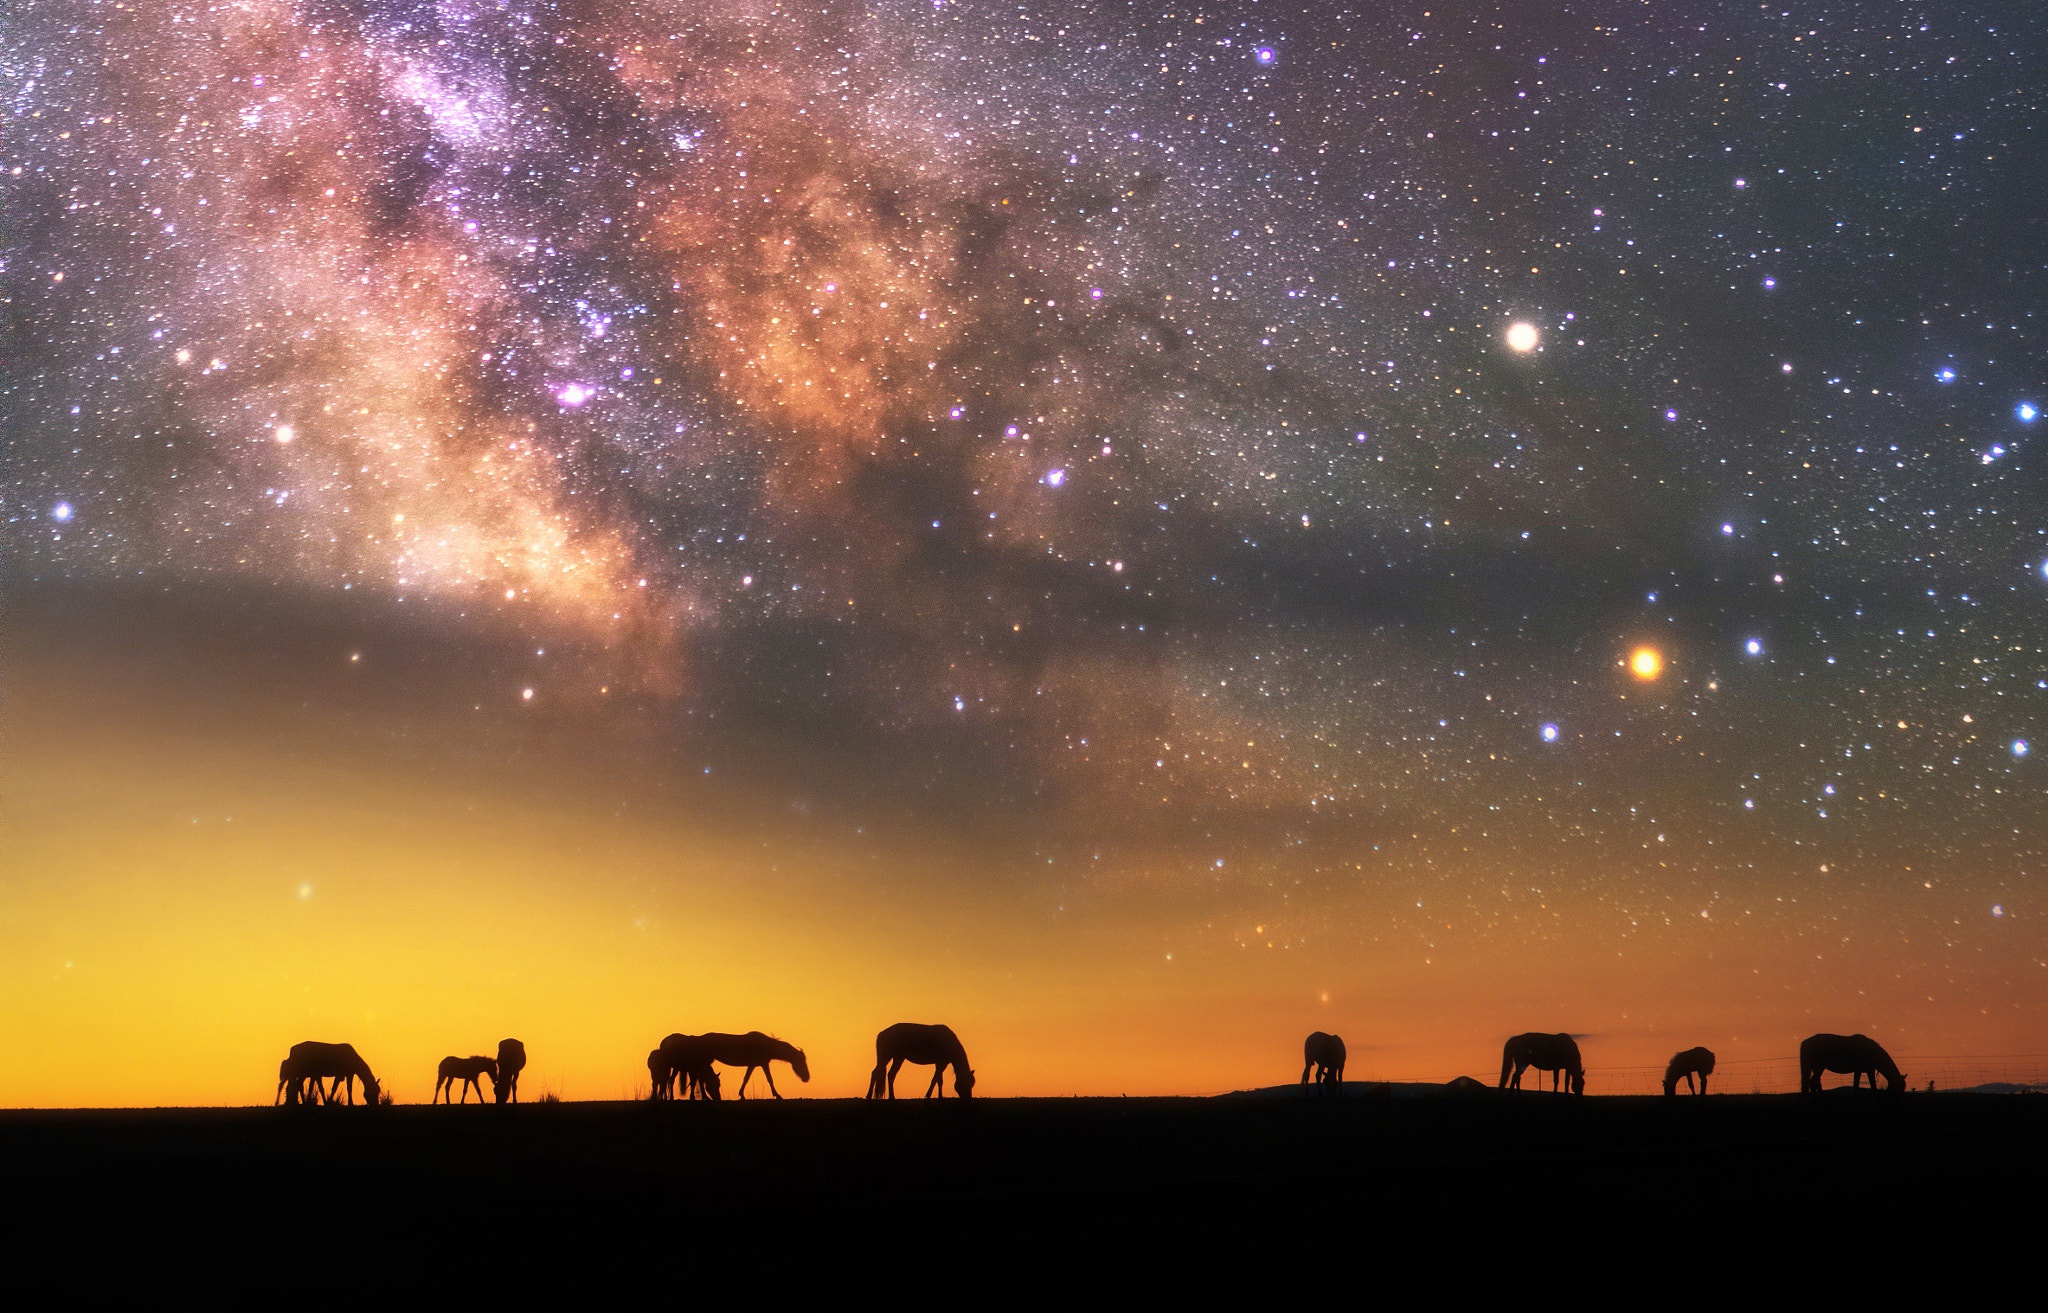 Скачать обои бесплатно Животные, Небо, Звезды, Ночь, Силуэт, Звездное Небо, Млечный Путь, Лошадь картинка на рабочий стол ПК